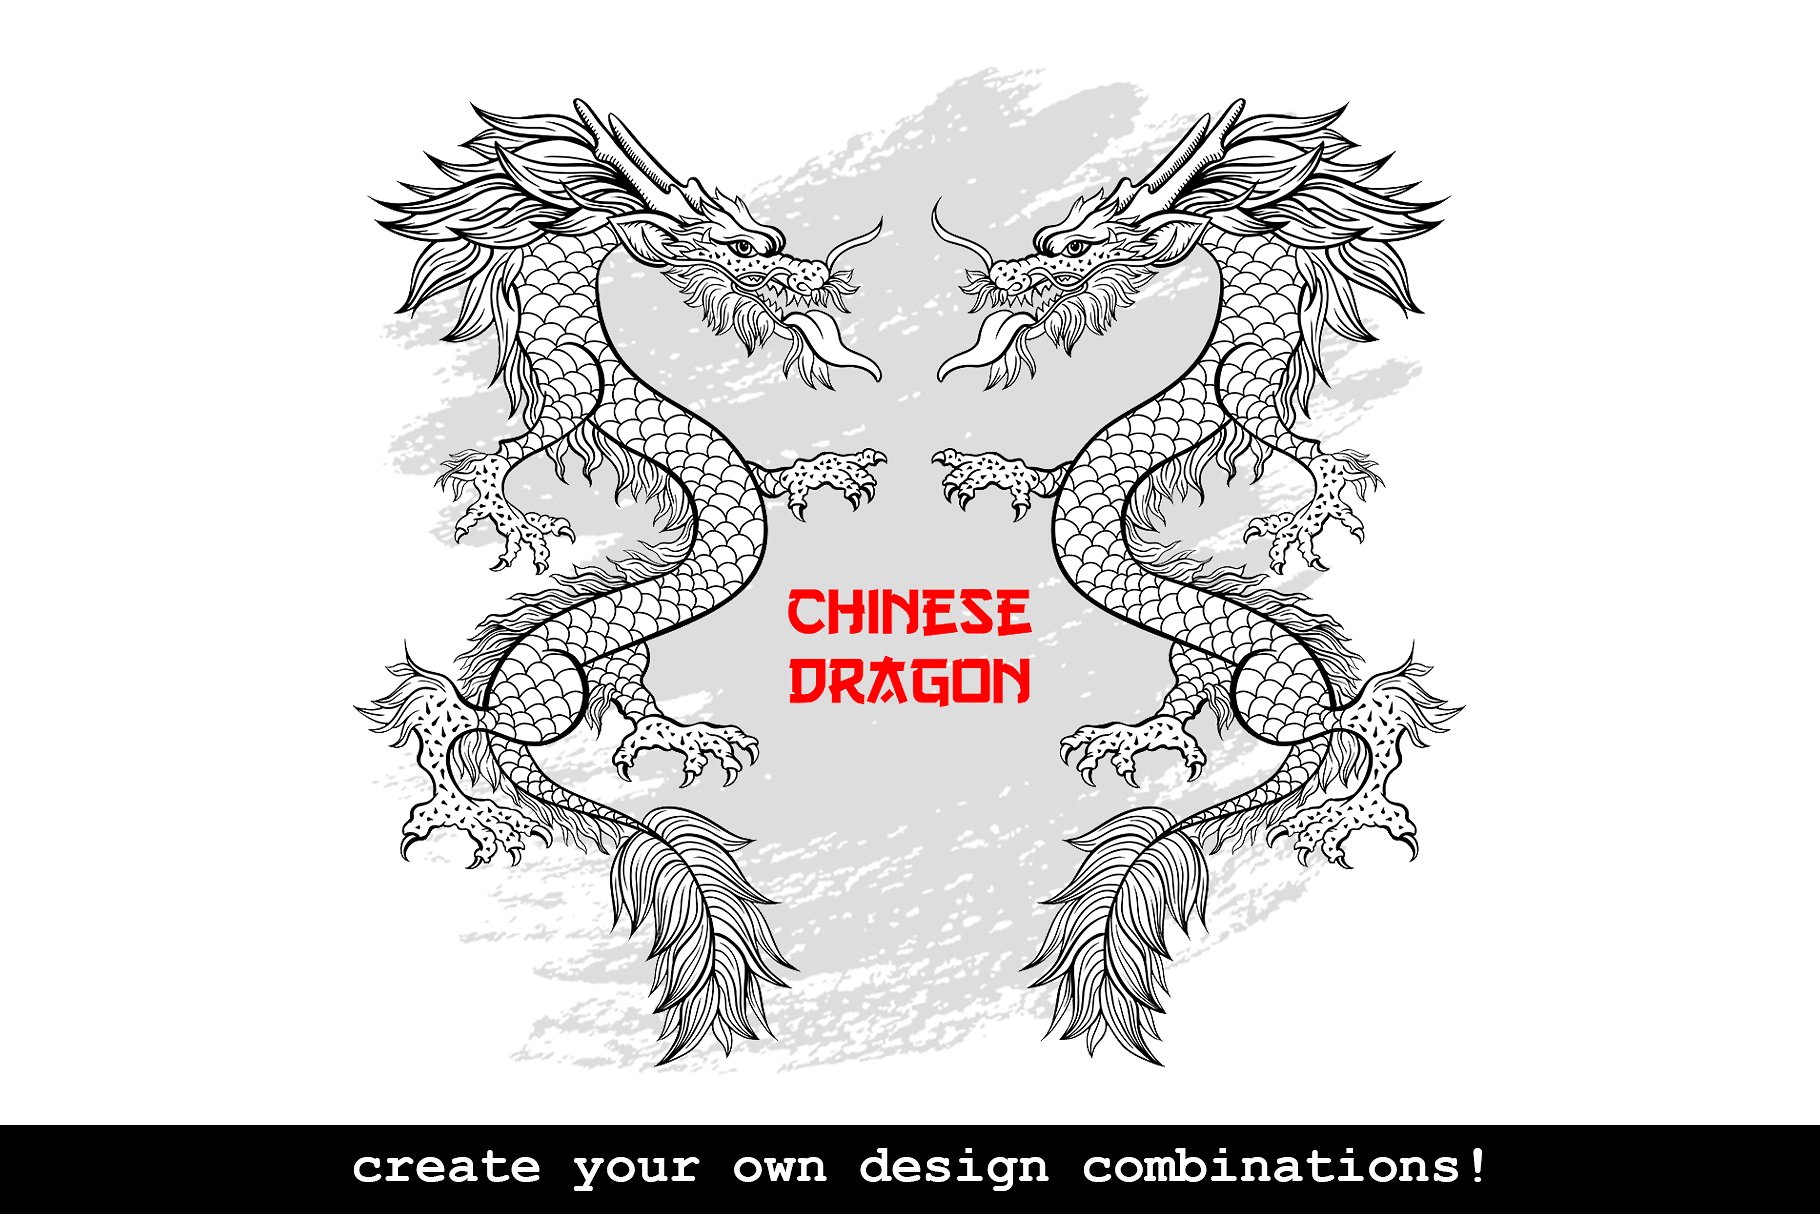 手绘中国风格中国龙AI矢量插图 Hand Drawn Chinese Style Chinese Dragon Illustrator Vector illustration插图4